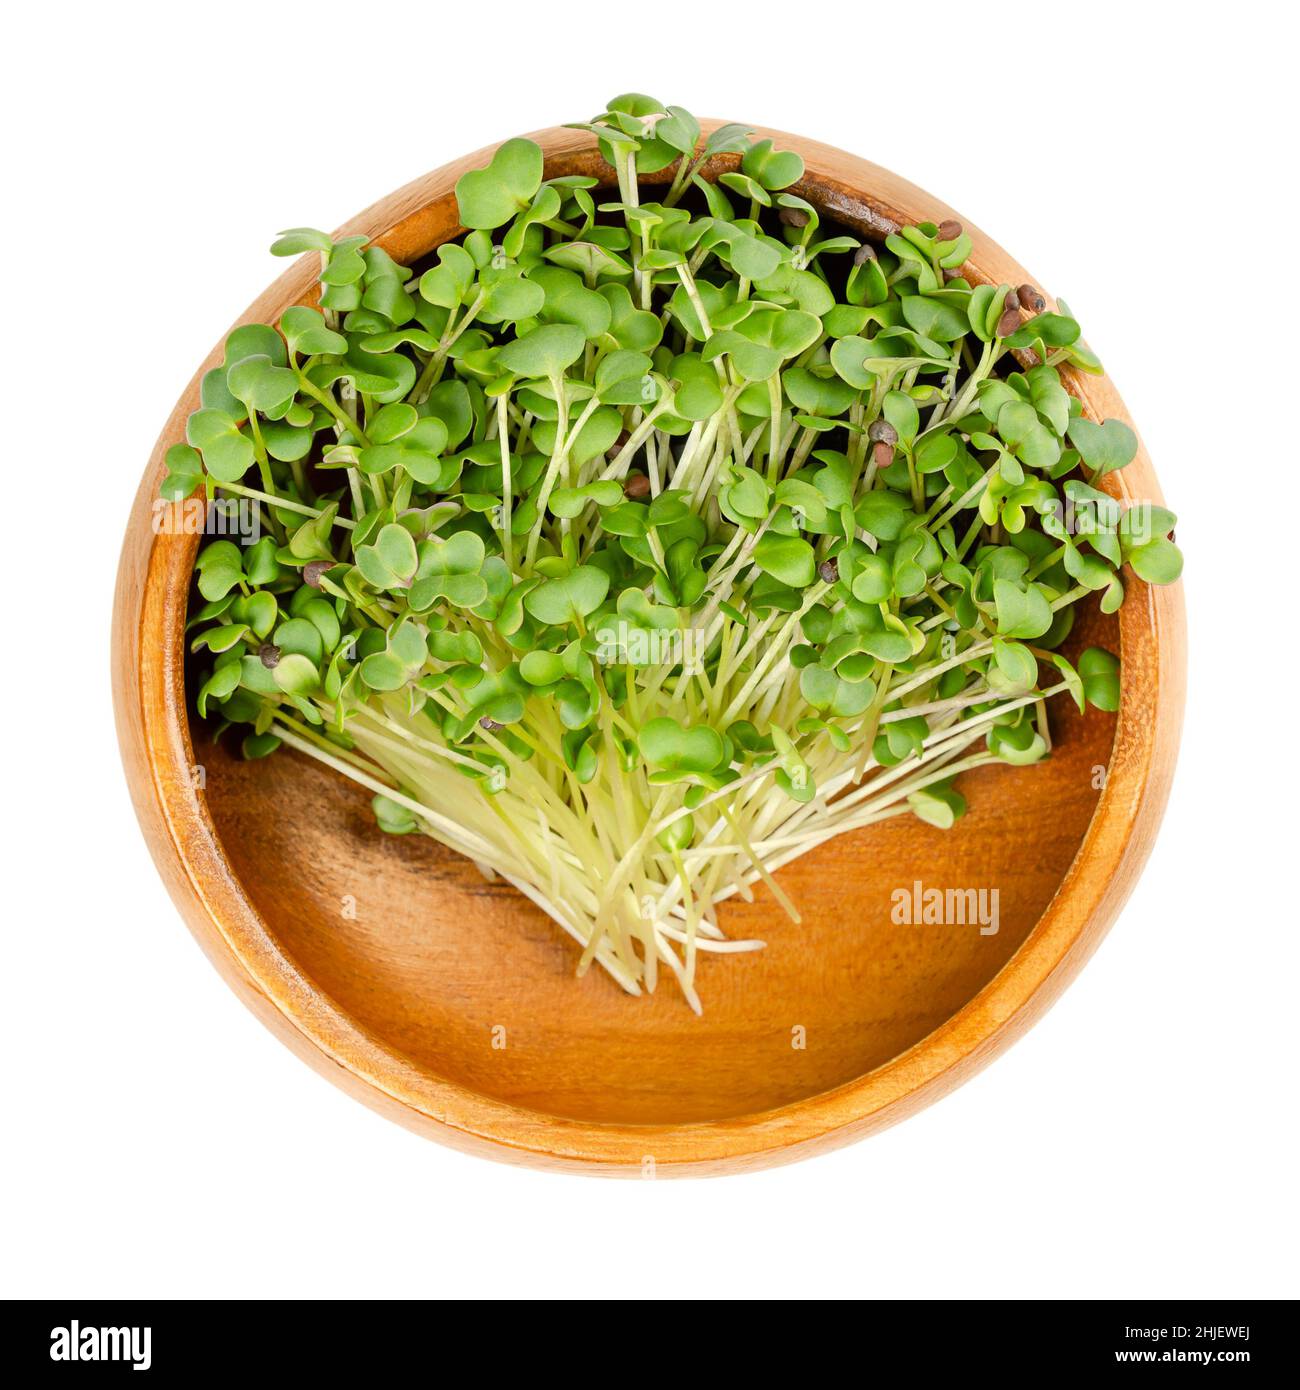 Moutarde noire micro-verte, dans un bol en bois.Jeunes feuilles, pousses et cotylédons de Brassica nigra, une herbe comestible, utilisés comme garniture de salade saine. Banque D'Images